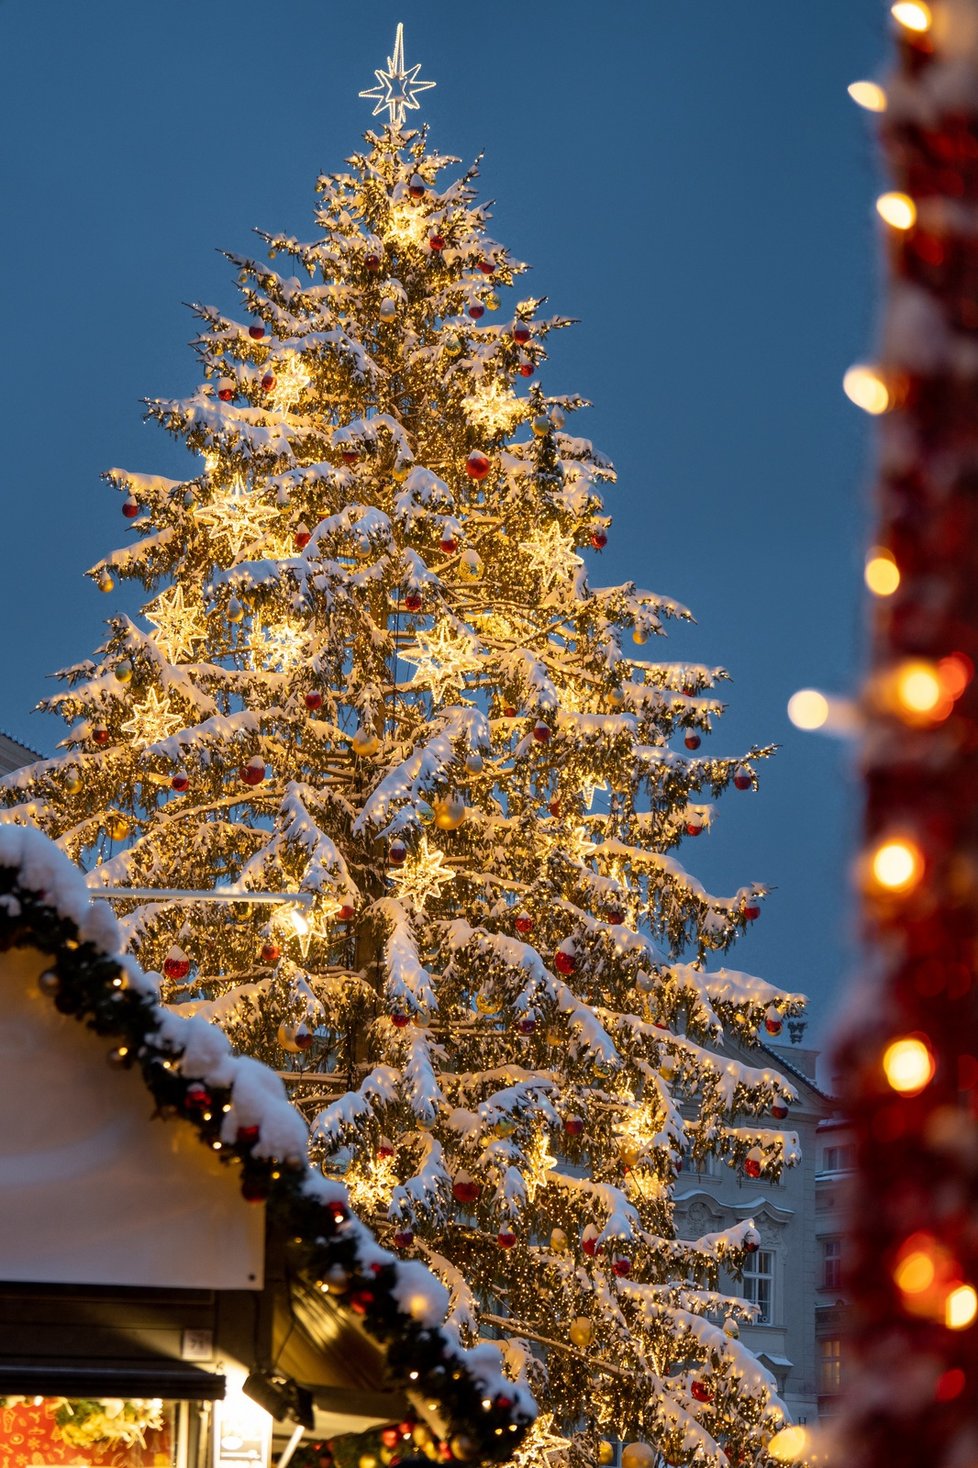 Vánoční strom na Staroměstském náměstí.